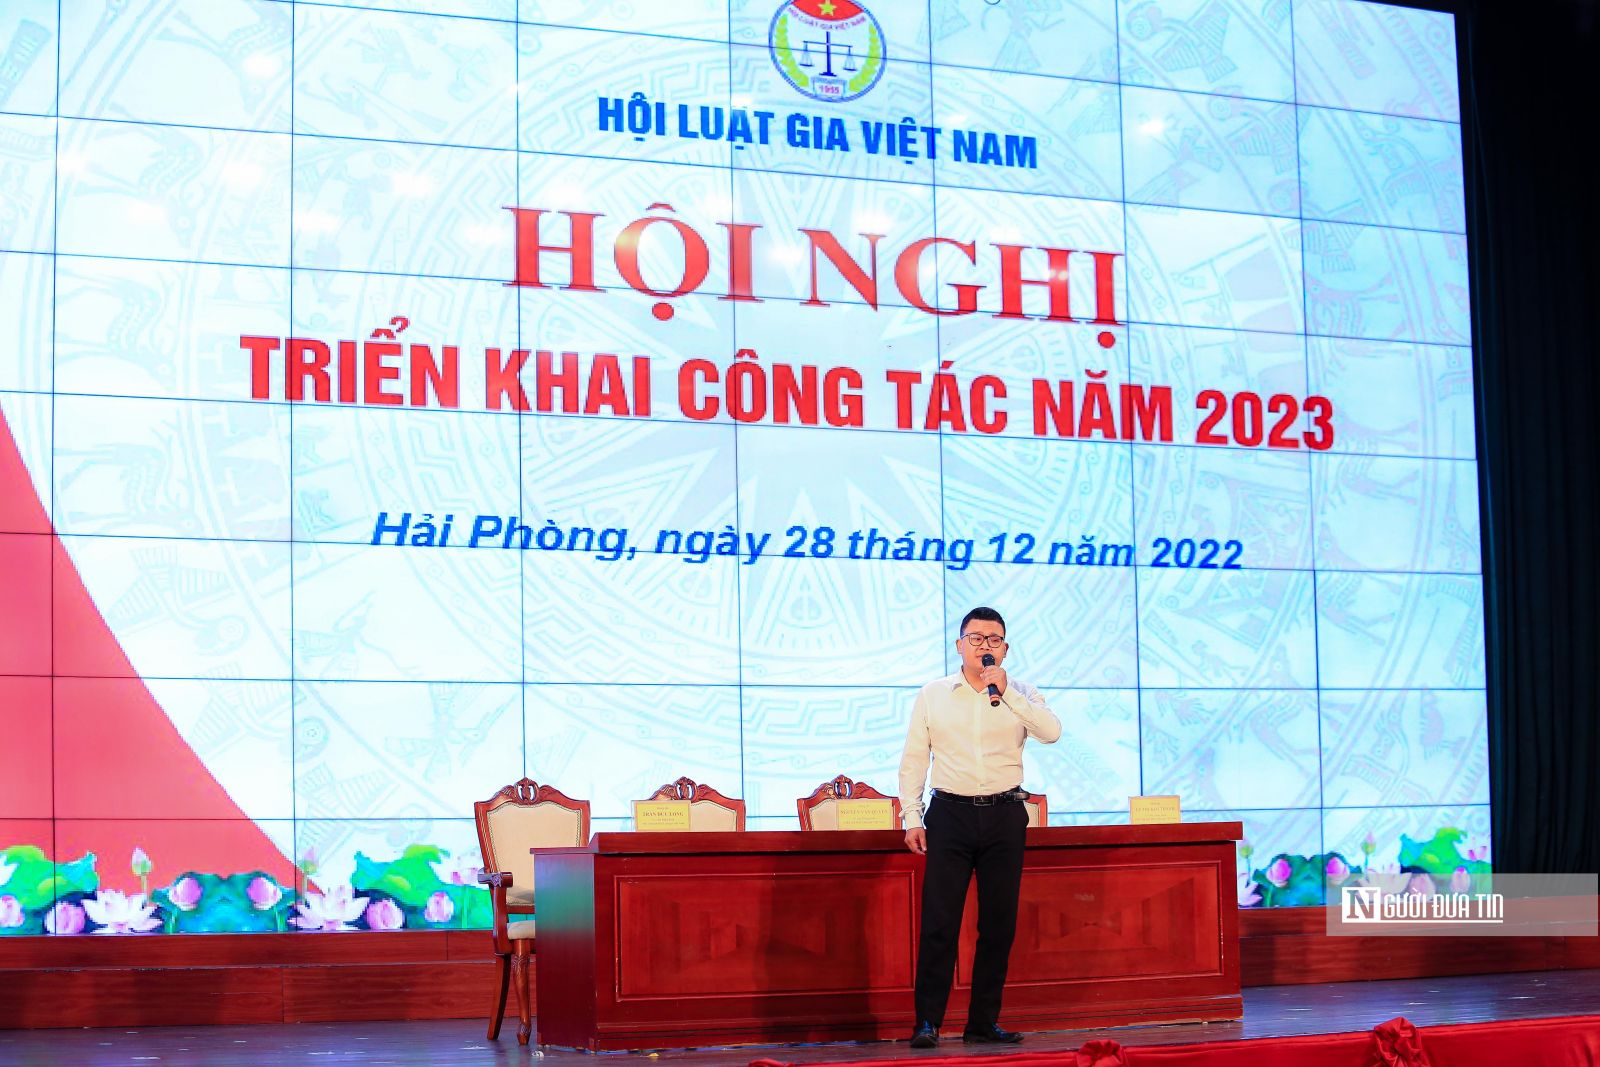 Khai mạc Hội nghị Triển khai công tác năm 2023 Hội Luật gia Việt Nam